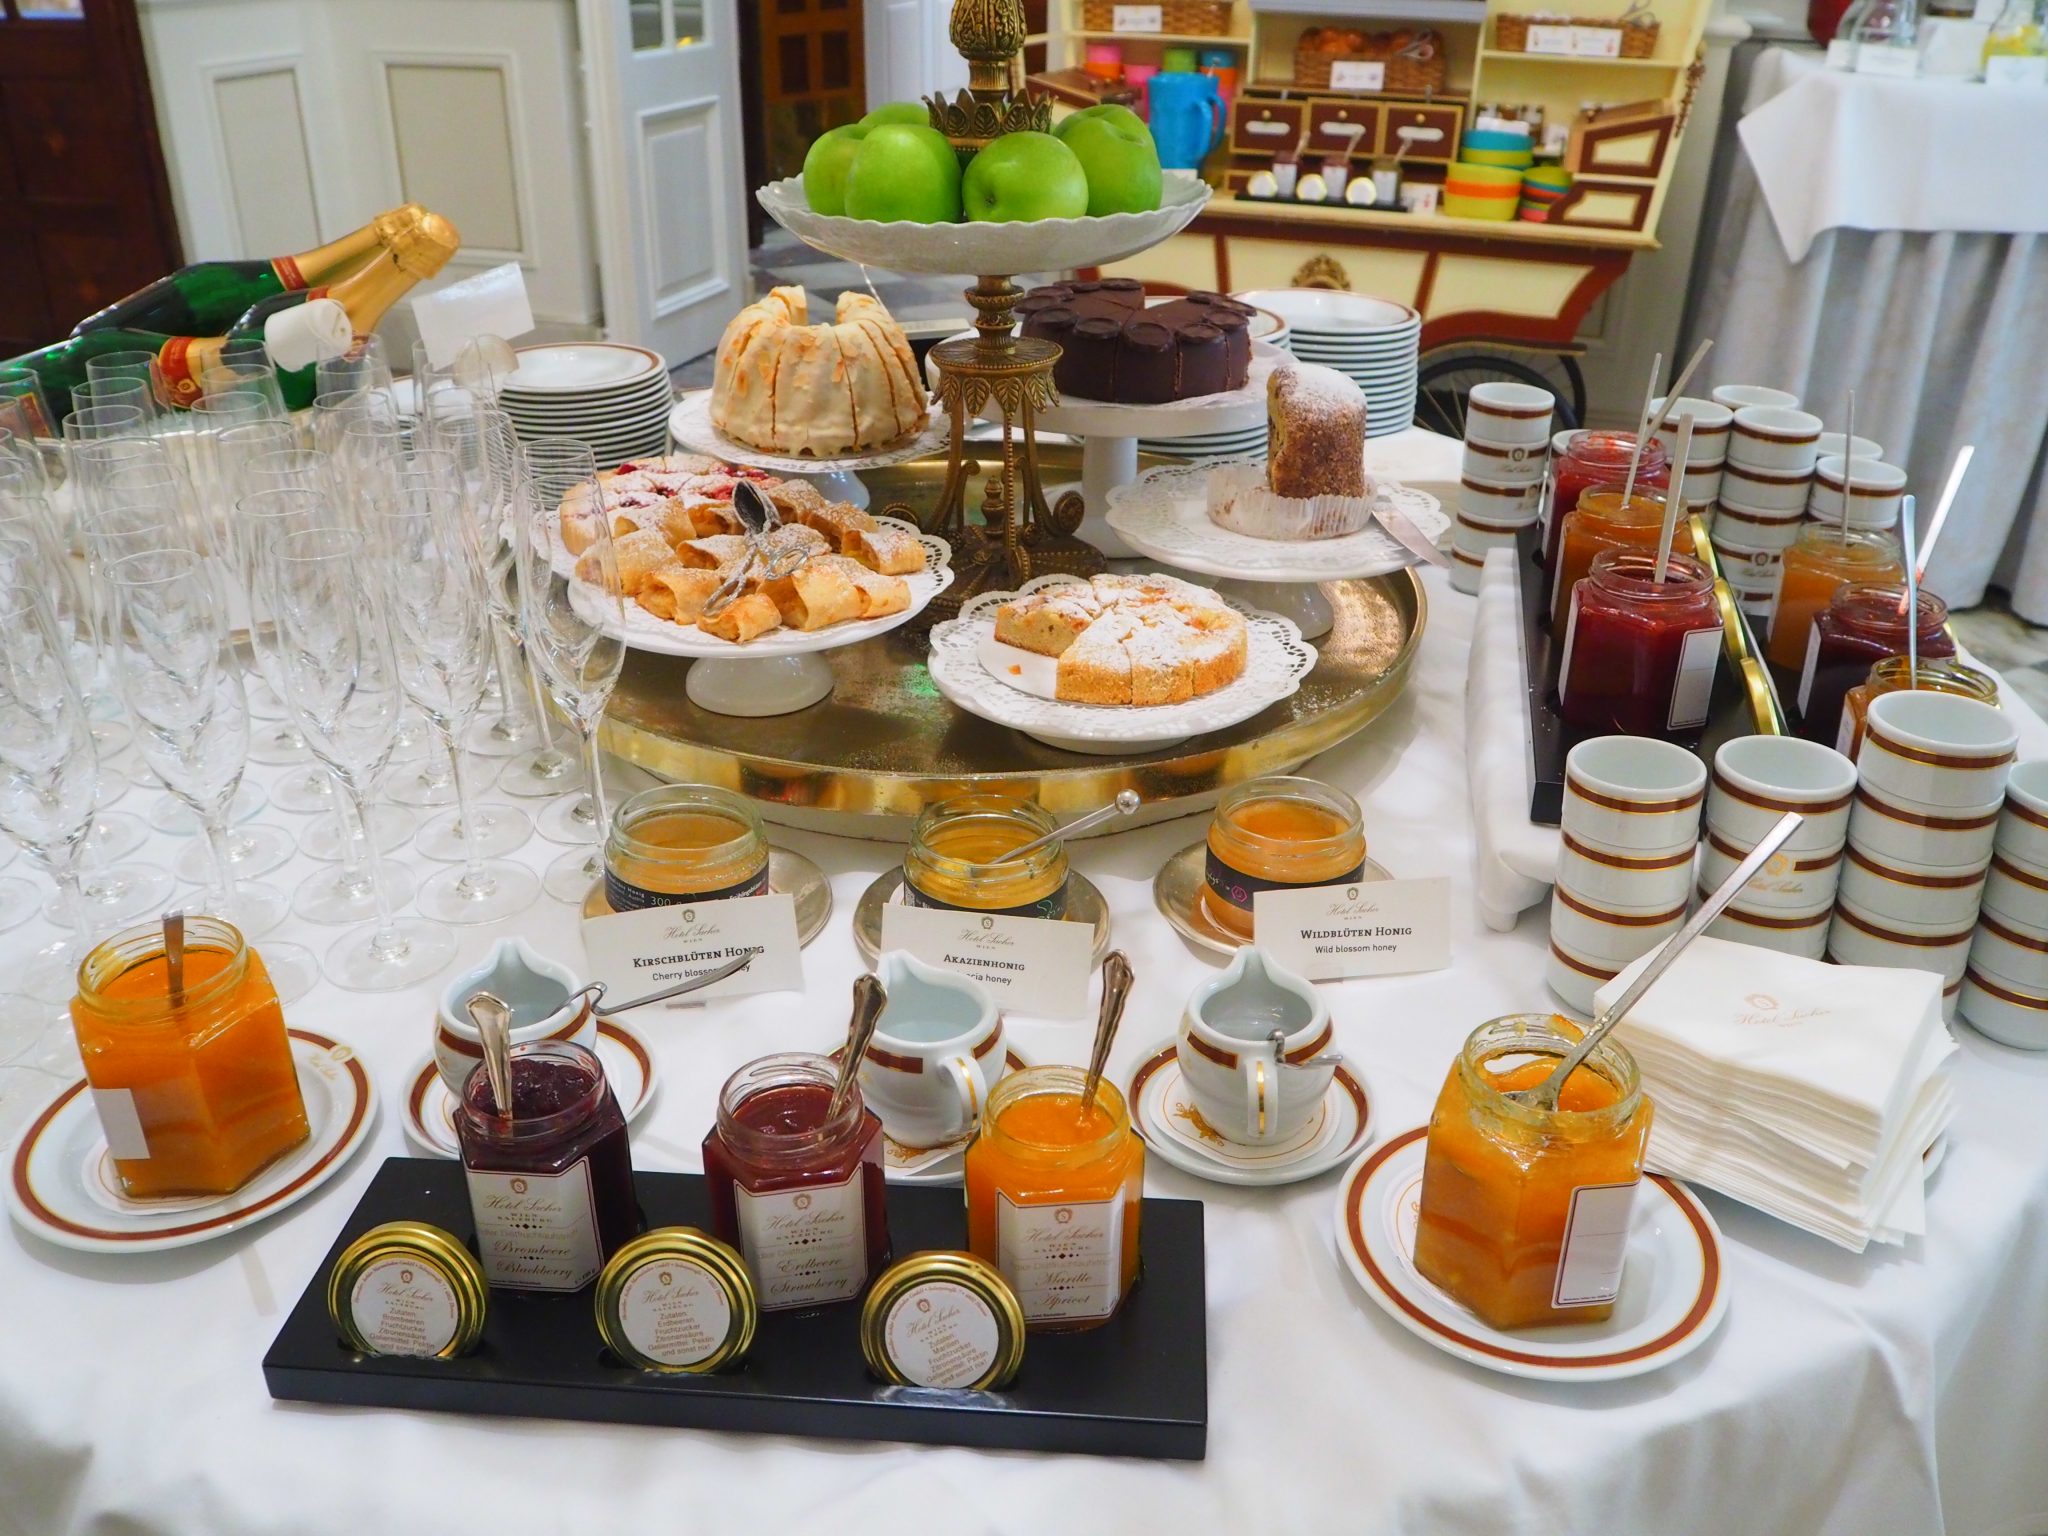 Breakfast Buffet at Hotel Sacher Review Vienna - 2022